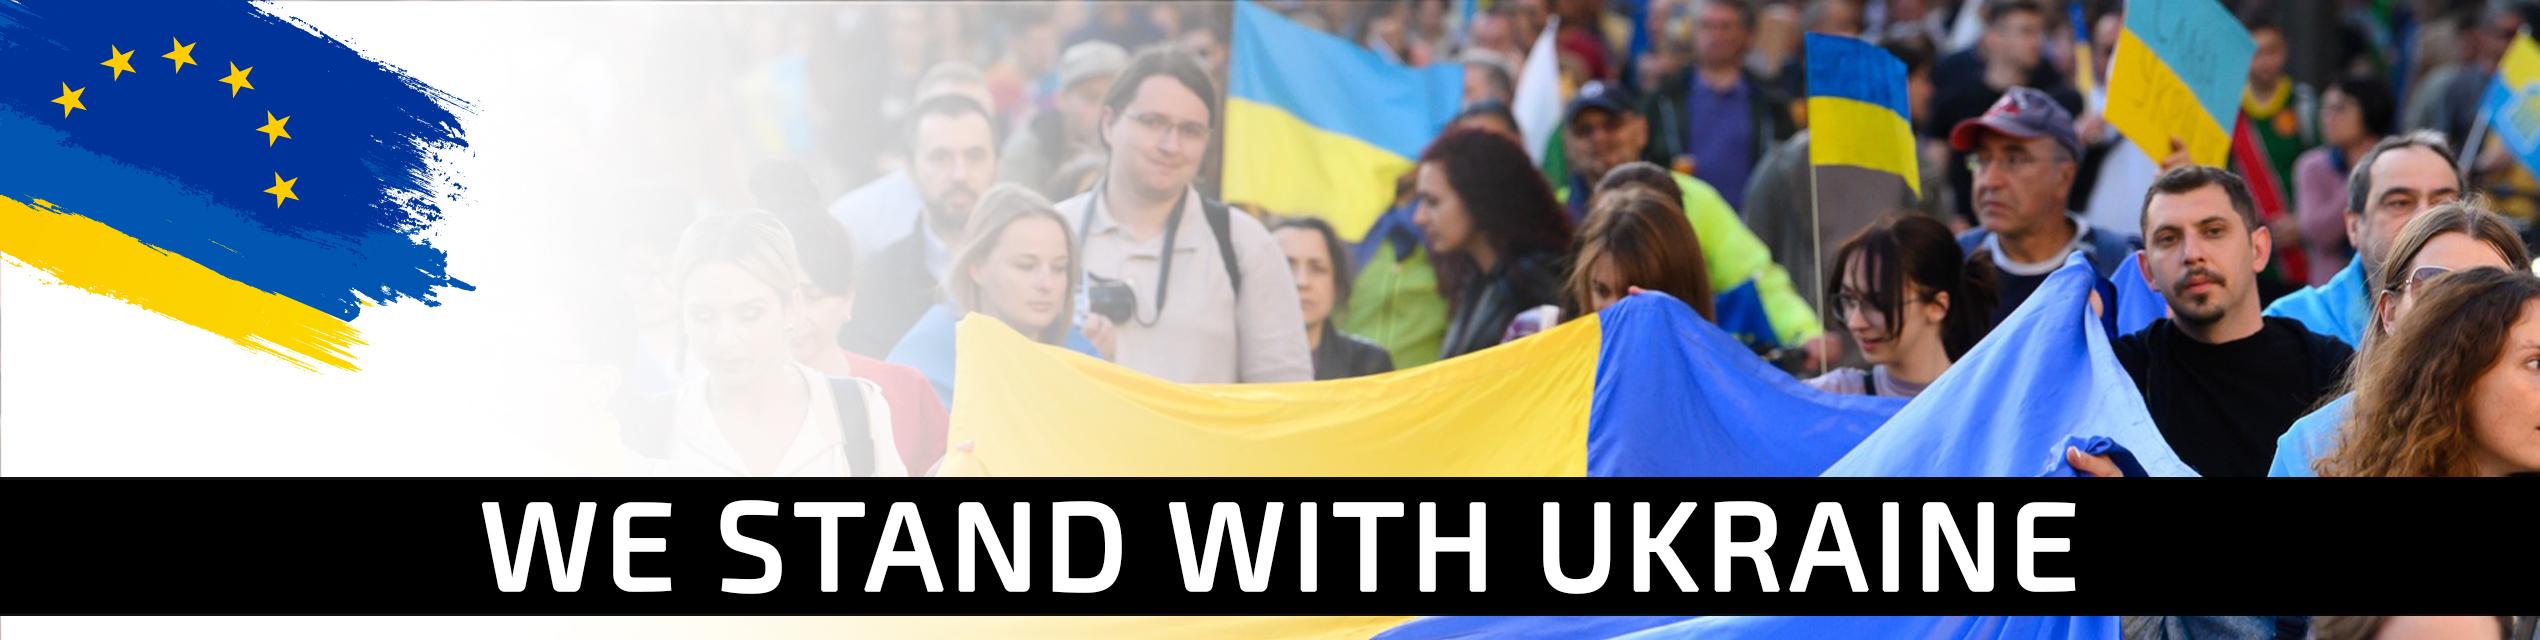 Ukraine 2 years SM banners